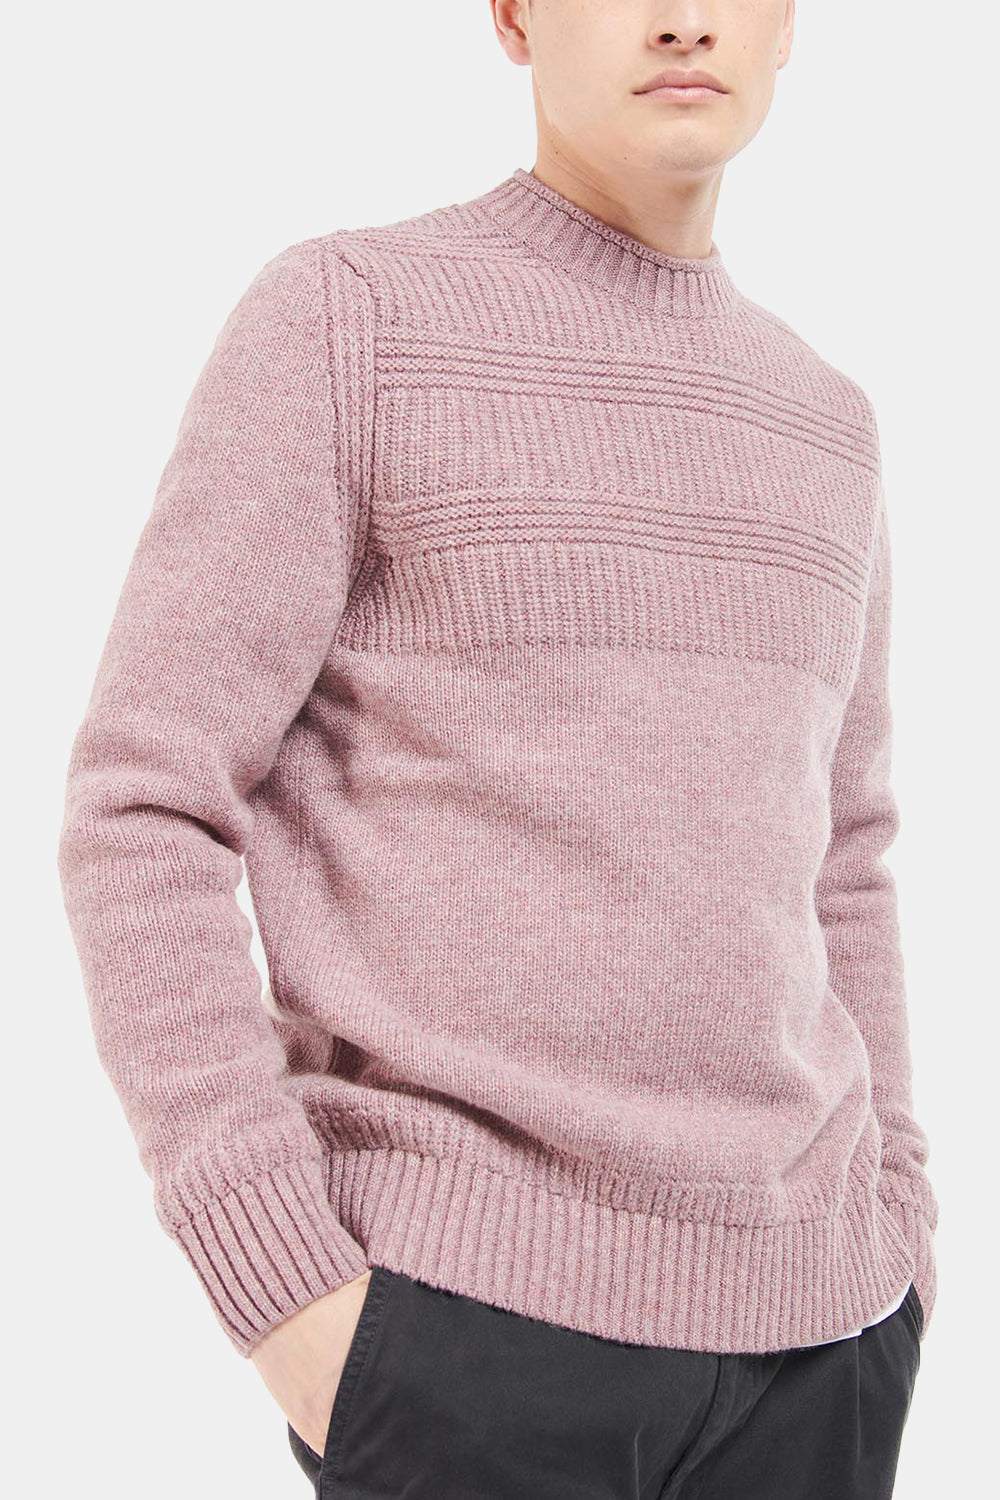 Barbour White Label Amherst Crew Sweatshirt (Pink Cinder)